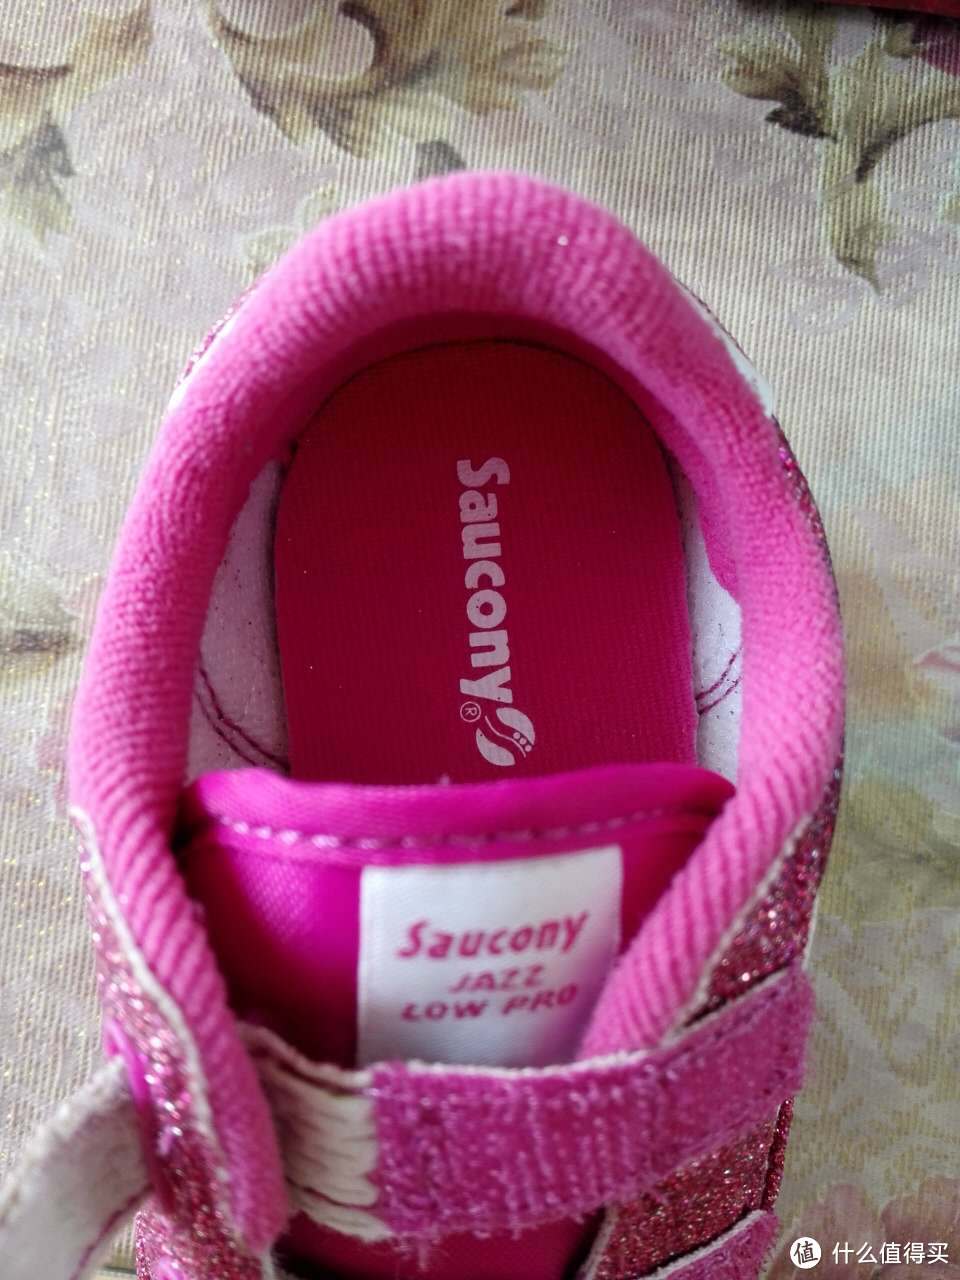 给我家胖妹妹小心心的学步礼物： saucony 女童鞋